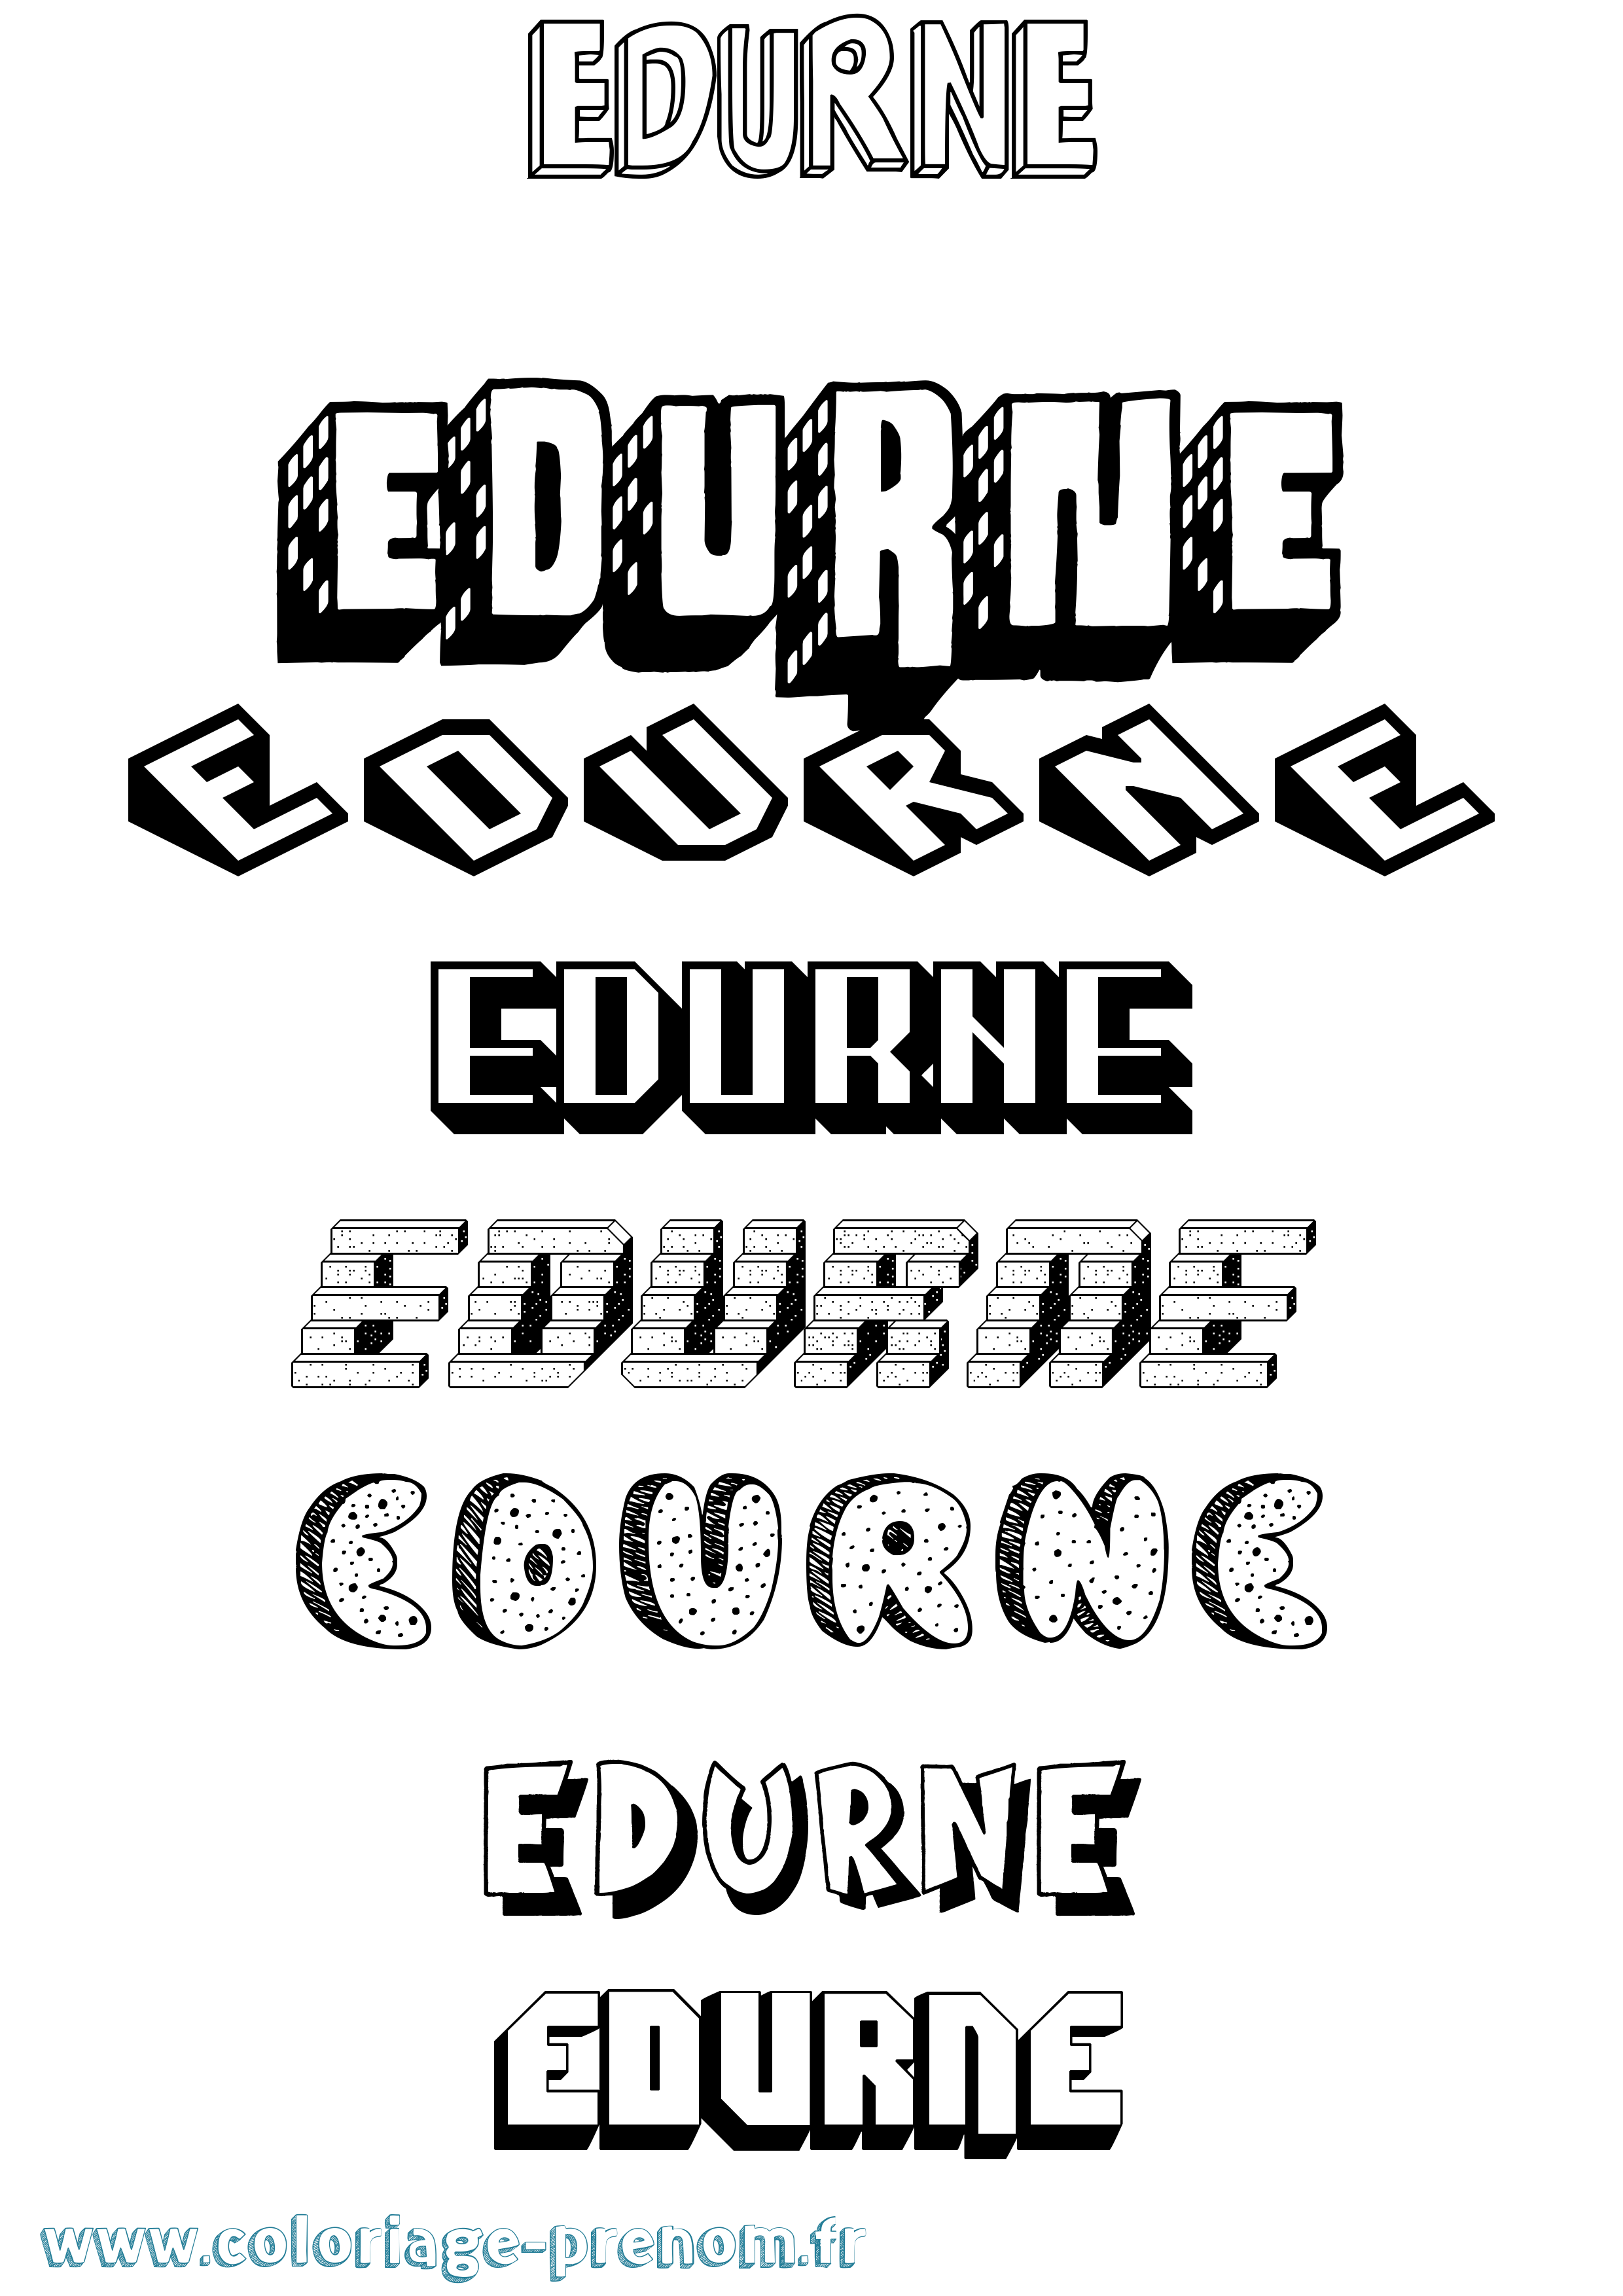 Coloriage prénom Edurne Effet 3D